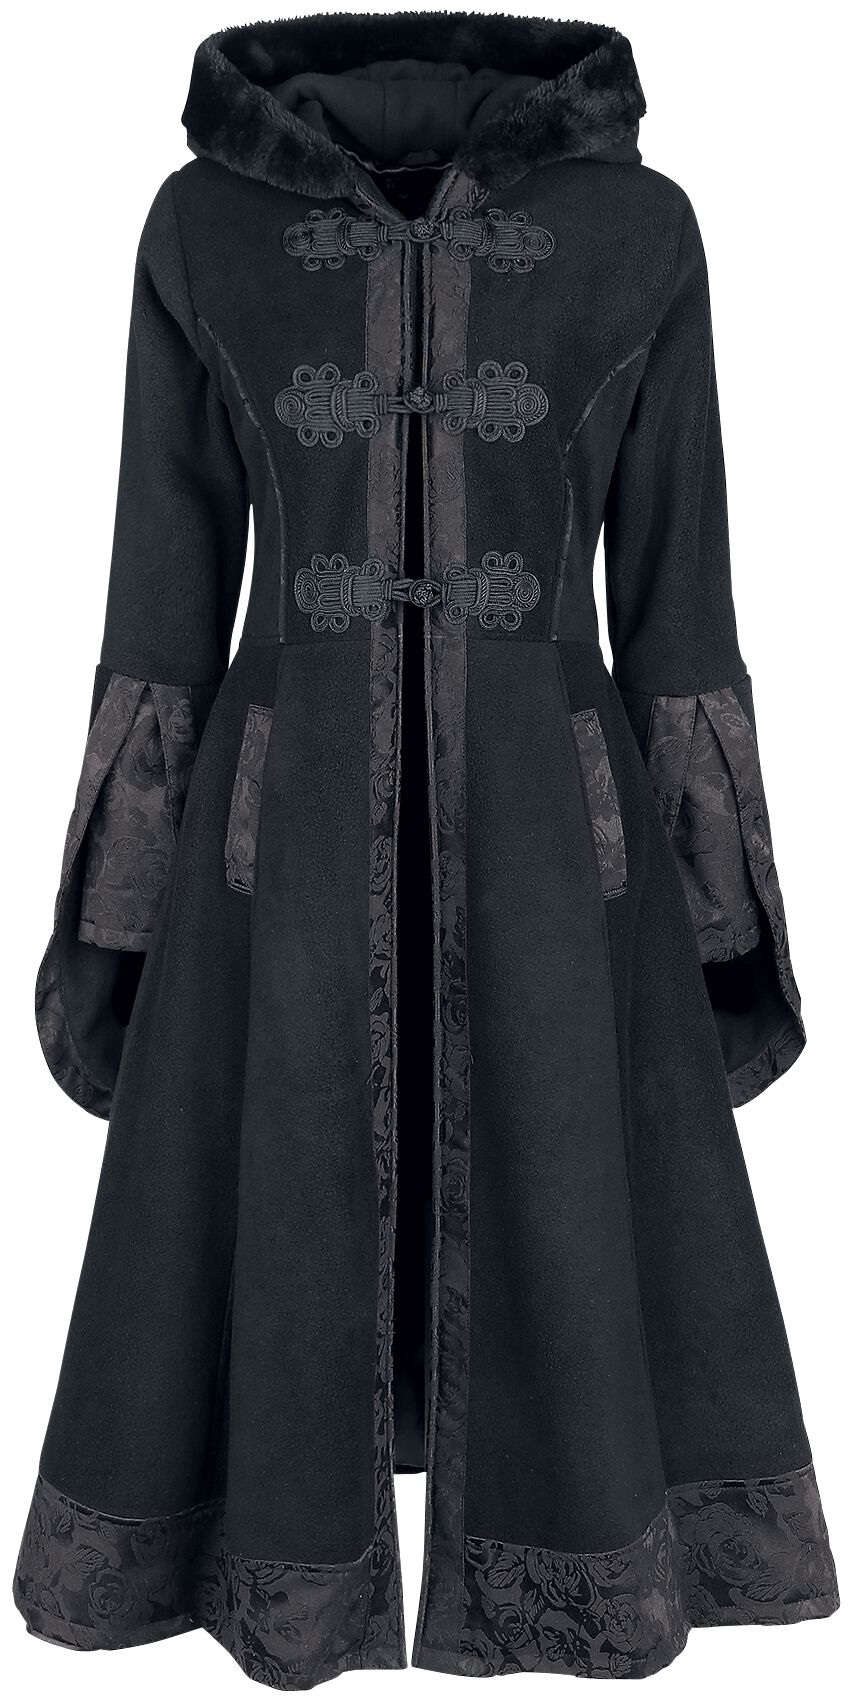 Poizen Industries Luella Coat Mantel schwarz in S